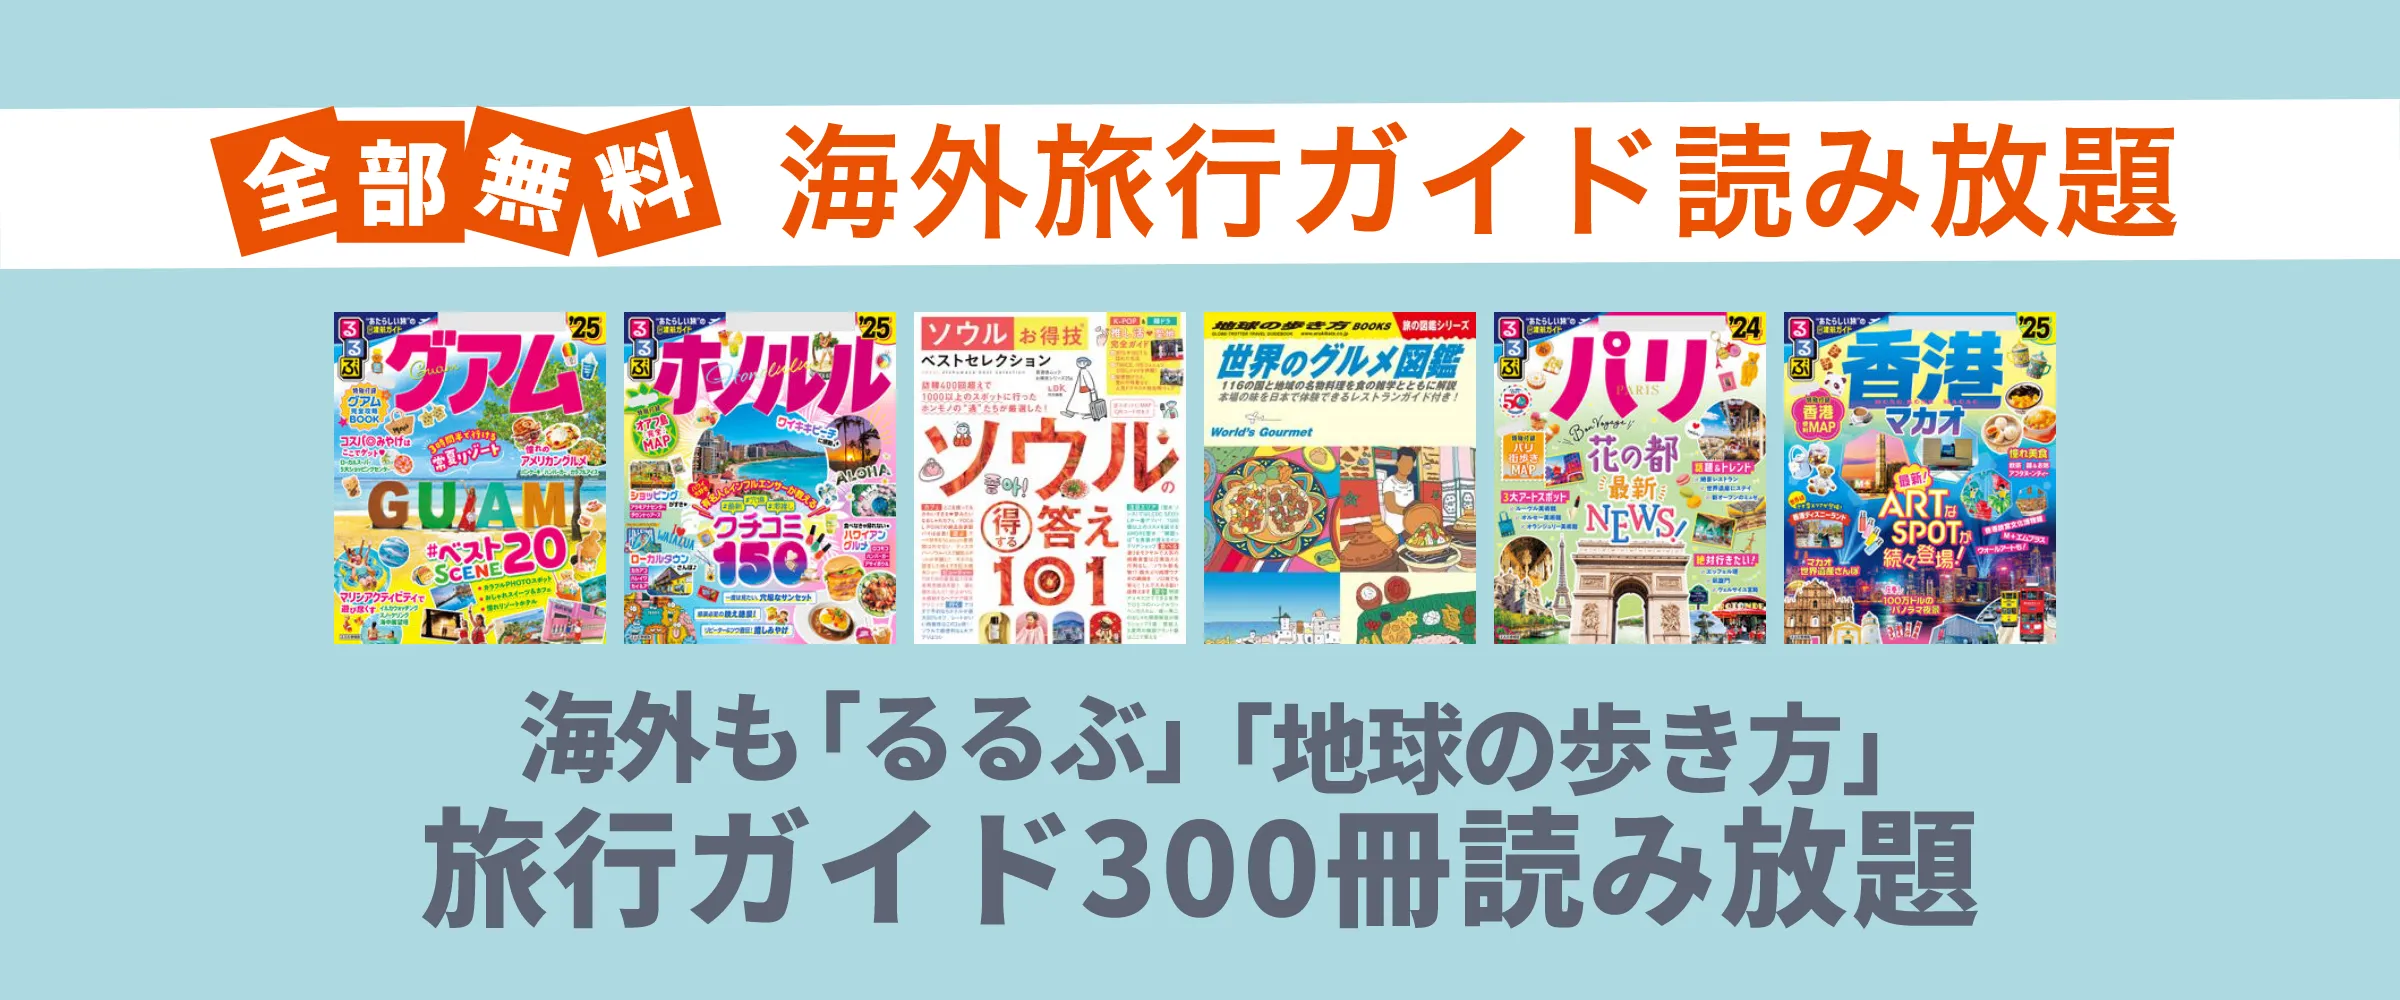 たった550円でるるぶ、地球の歩き方など海外旅行雑誌100冊以上読み放題。最初の1ヵ月無料。